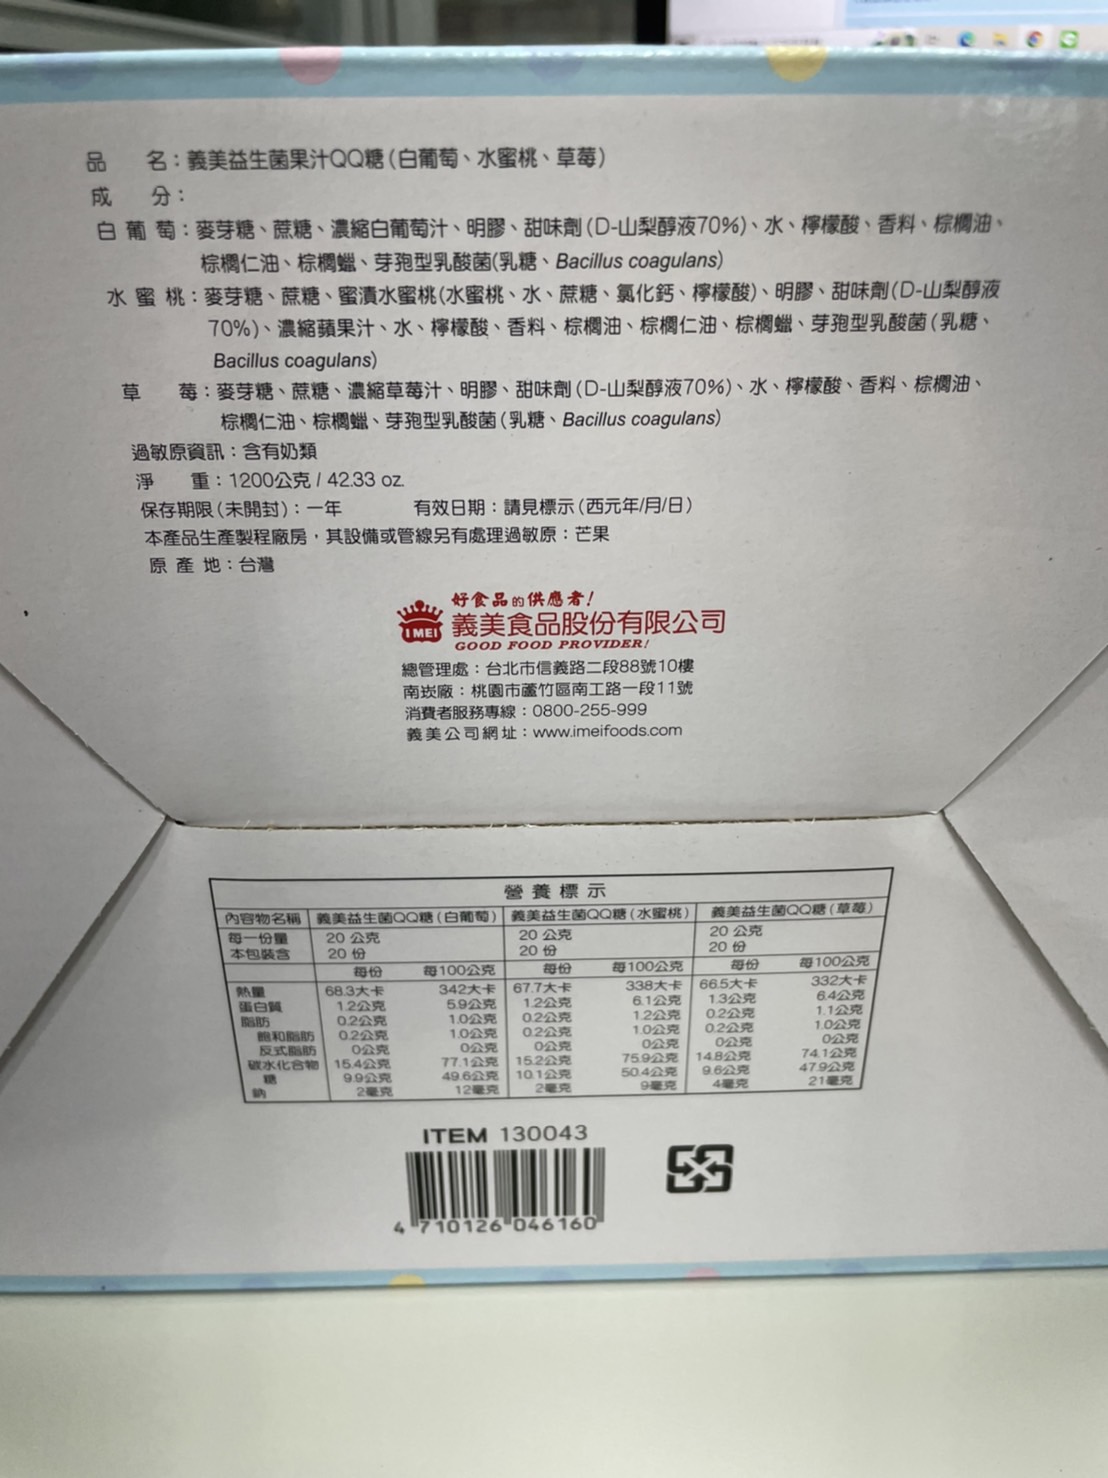 【義美】益生菌果汁QQ糖(40g*30入/盒) 不含人工色素香料 維持消化道機能